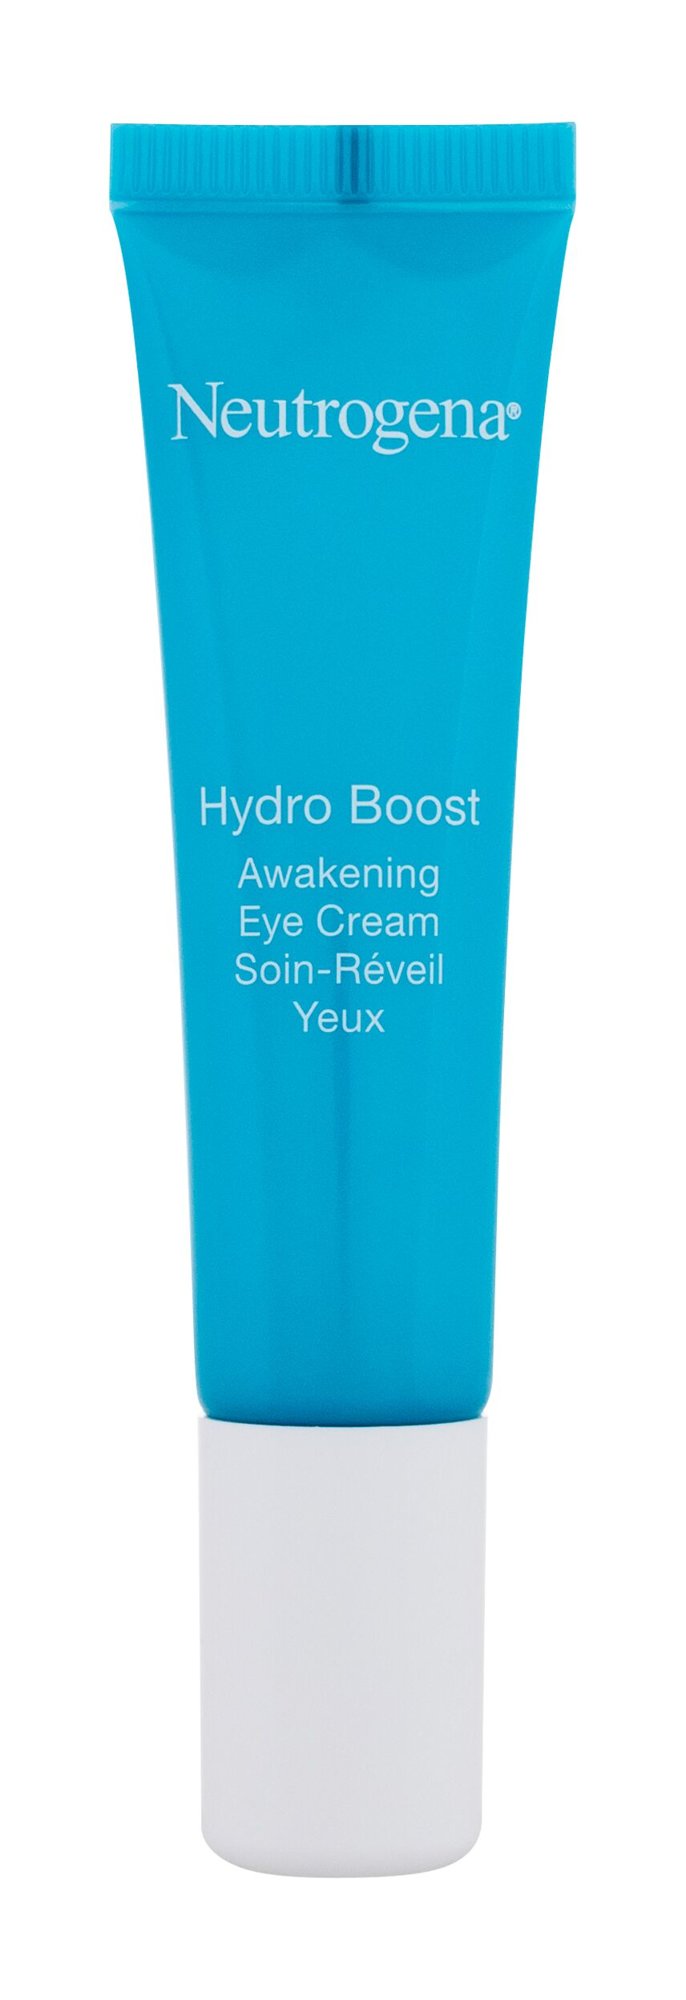 Neutrogena Hydro Boost Awakening Eye Cream paakių kremas